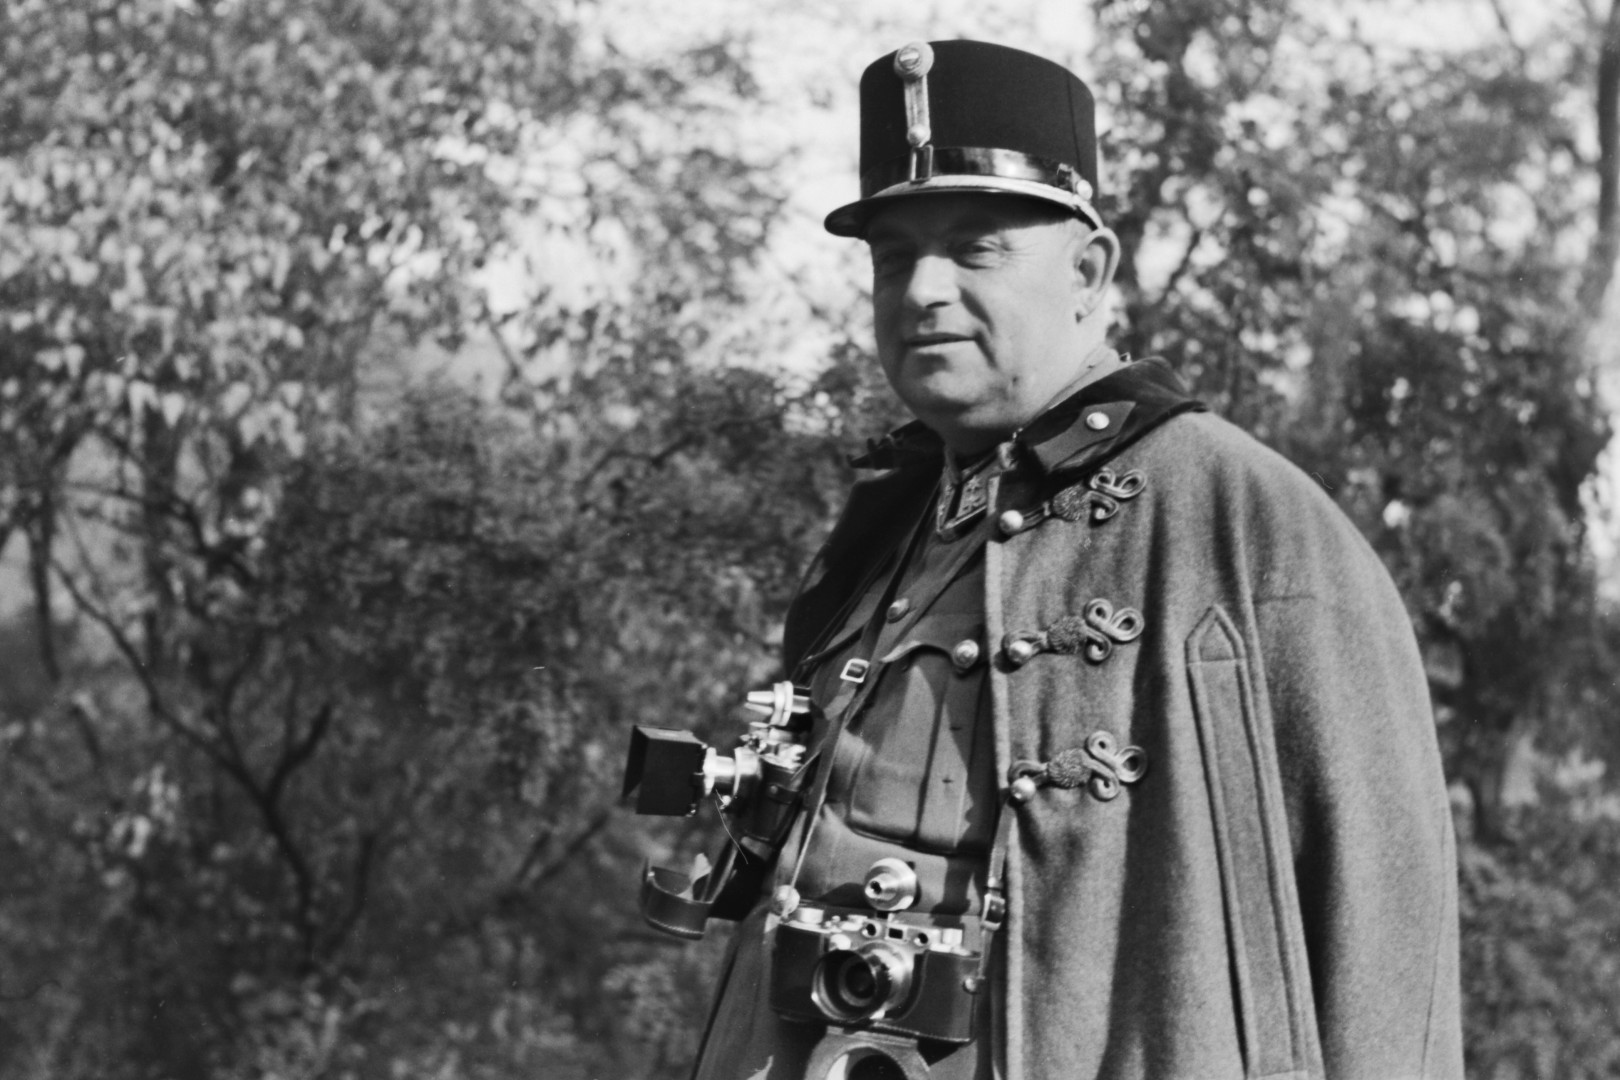 Konok Tamás alezredes, a 2. Magyar Hadsereg haditudósító századának parancsnoka nyakában Leica fényképezőgépeivel. #43206 – Fotó: Fortepan / Id. Konok Tamás